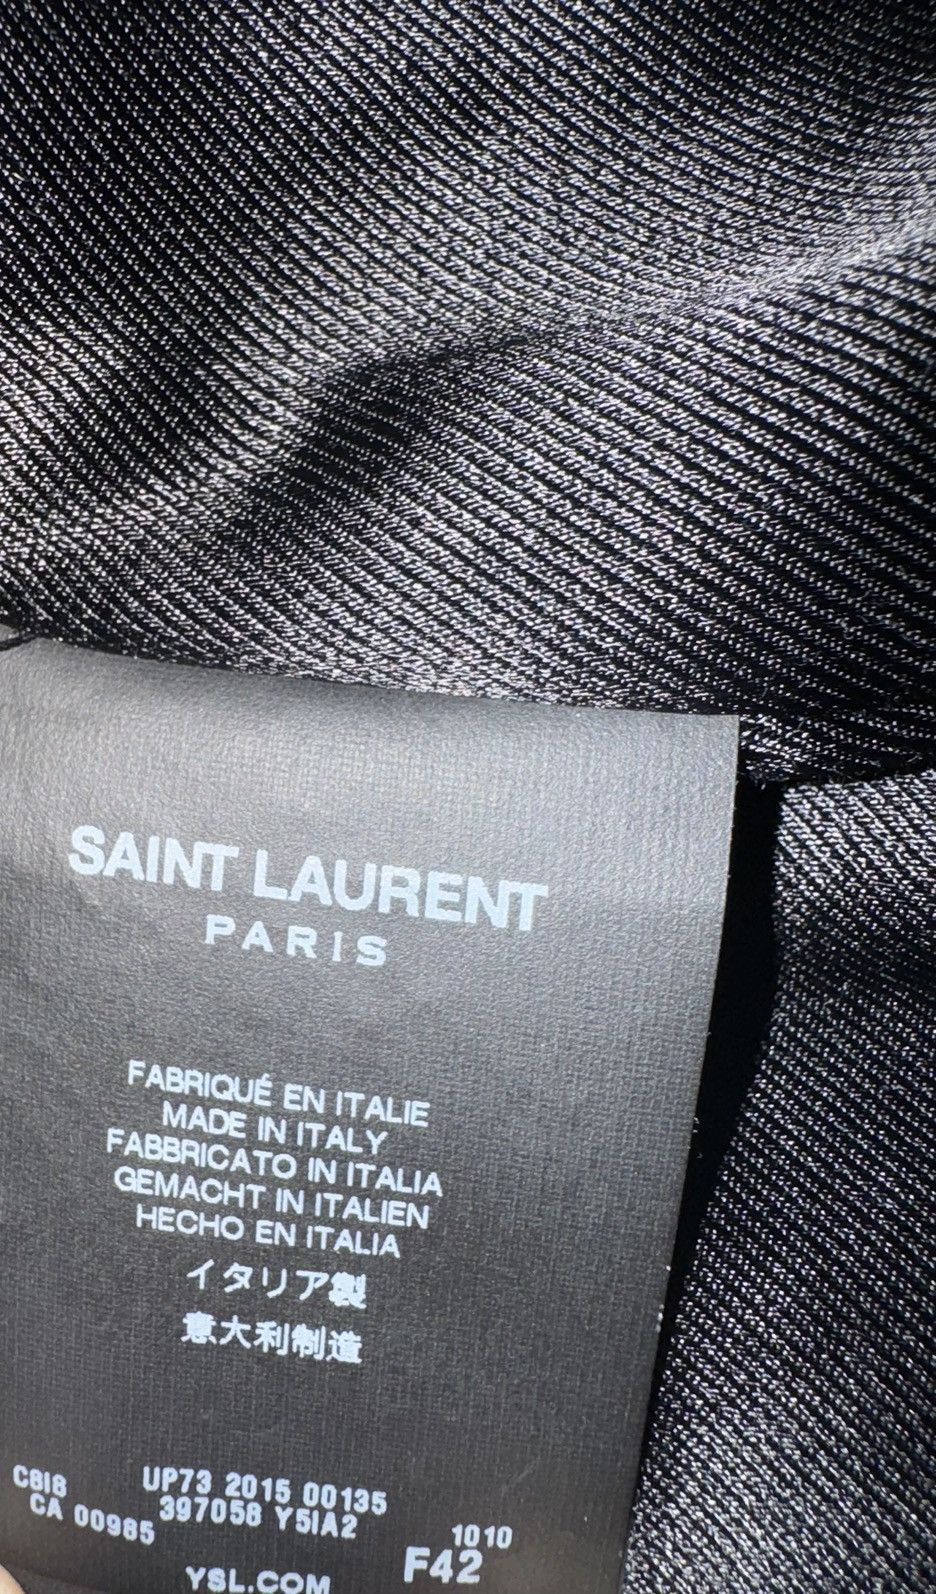 Saint Laurent Paris Black Leather Moto Jacket Size M / US 6-8 / IT 42-44 - 8 Thumbnail